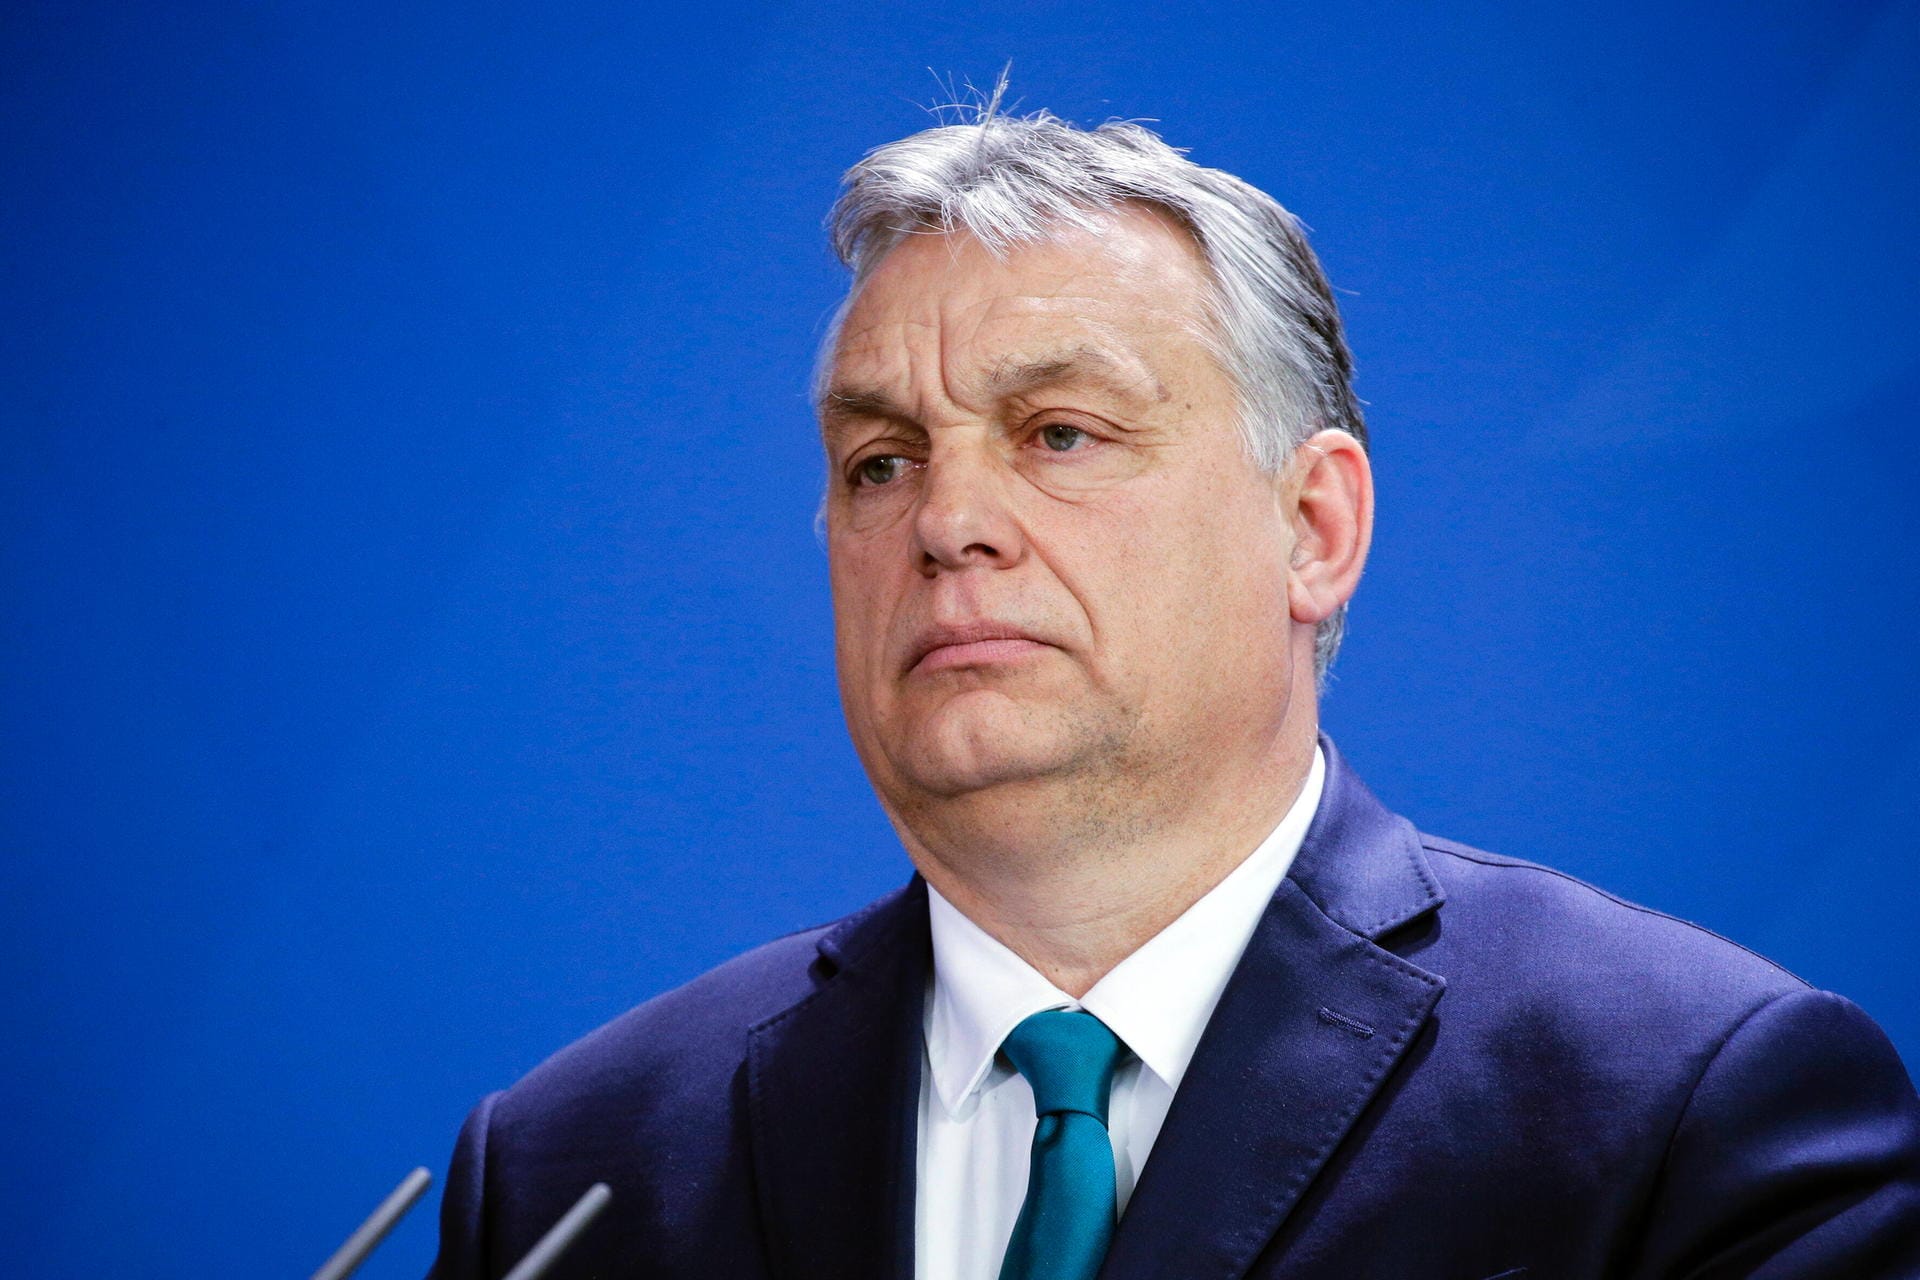 Viktor Orban: Der ungarische Ministerpräsident hat das Notstandsgesetz in Kraft gesetzt. Dieses hatte im In- und Ausland große Besorgnis ausgelöst, zumal Orban schon in den bisherigen zehn Jahren seiner Amtszeit zu einem autoritären Durchregieren neigte. Kritiker sprachen von einer Art "Ermächtigungsgesetz".